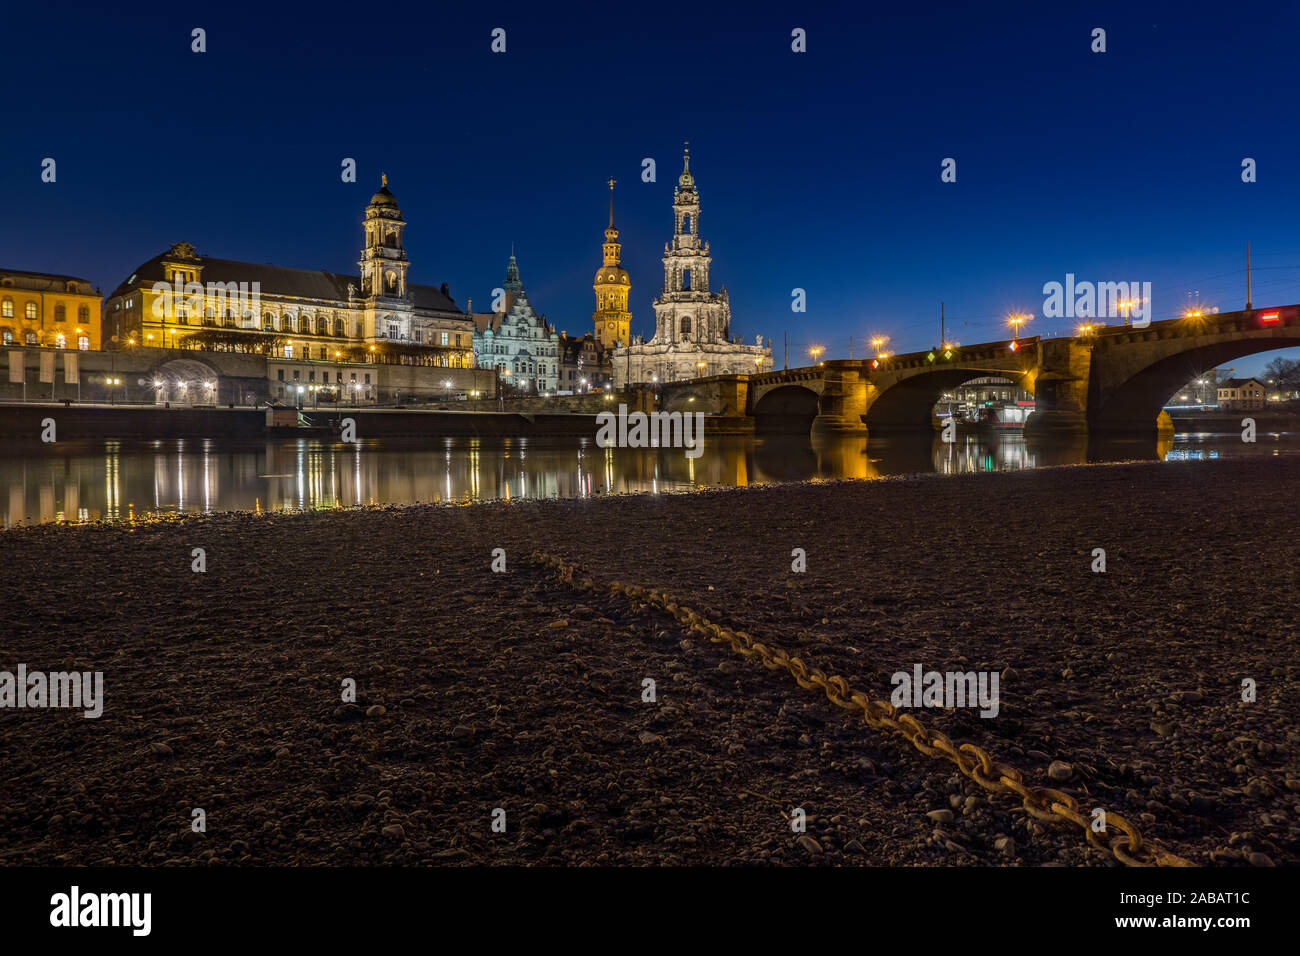 Dresden, die Hauptstadt des Bundeslandes Sachsen, zeichnet sich durch ihre renommierten Kunstmuseen und die klassische Architektur der rekonstruierten Stock Photo